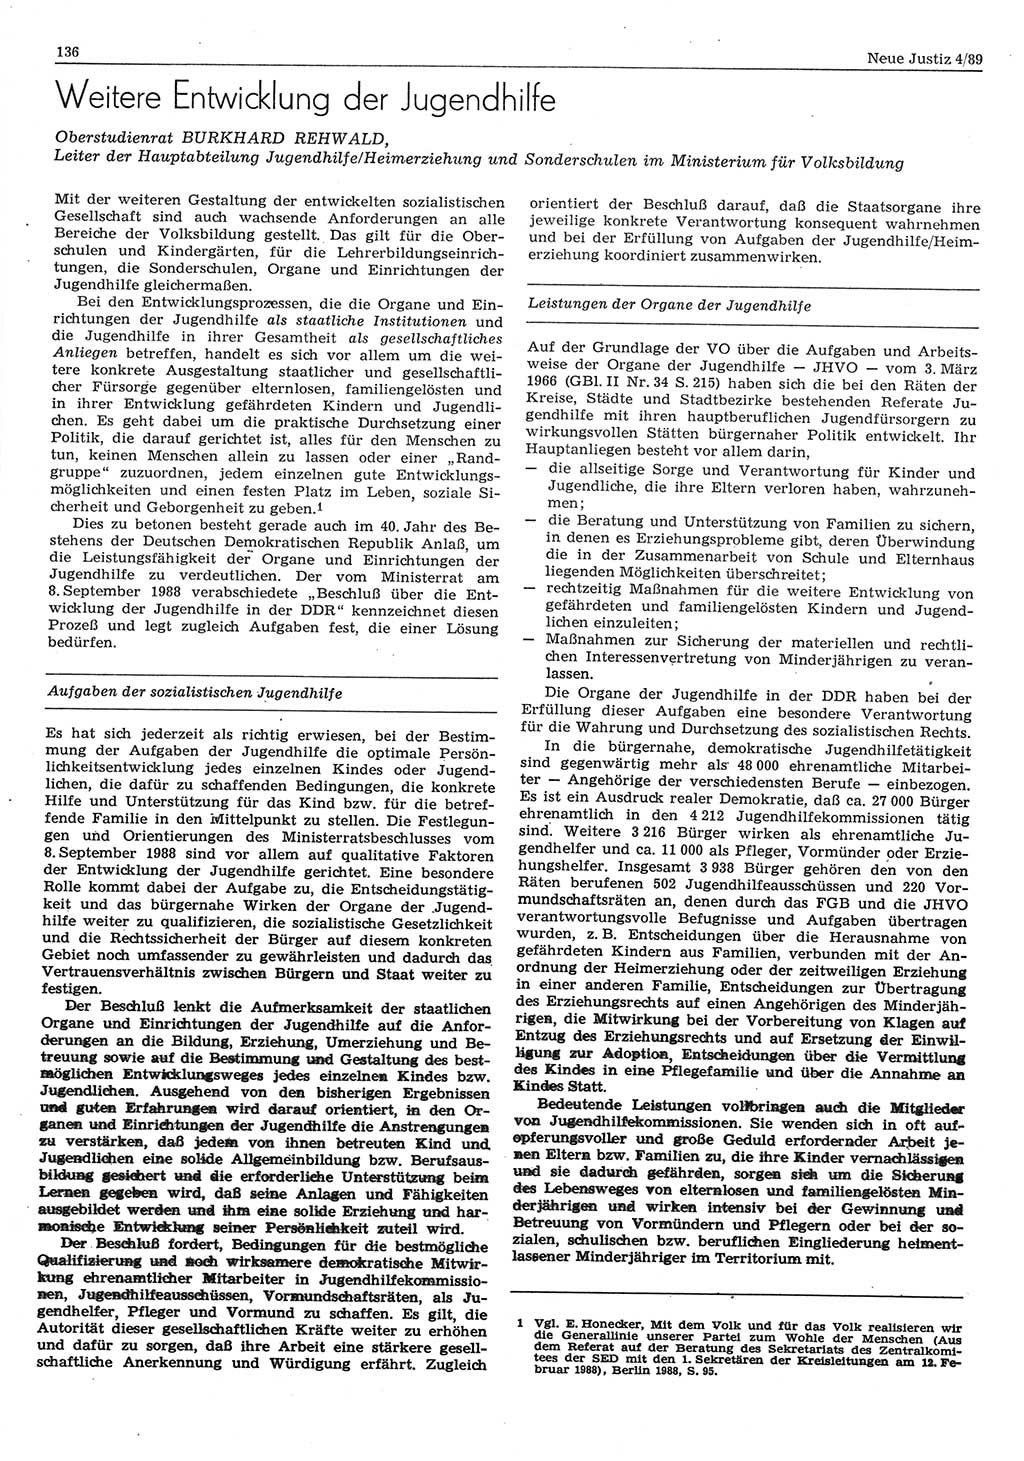 Neue Justiz (NJ), Zeitschrift für sozialistisches Recht und Gesetzlichkeit [Deutsche Demokratische Republik (DDR)], 43. Jahrgang 1989, Seite 136 (NJ DDR 1989, S. 136)